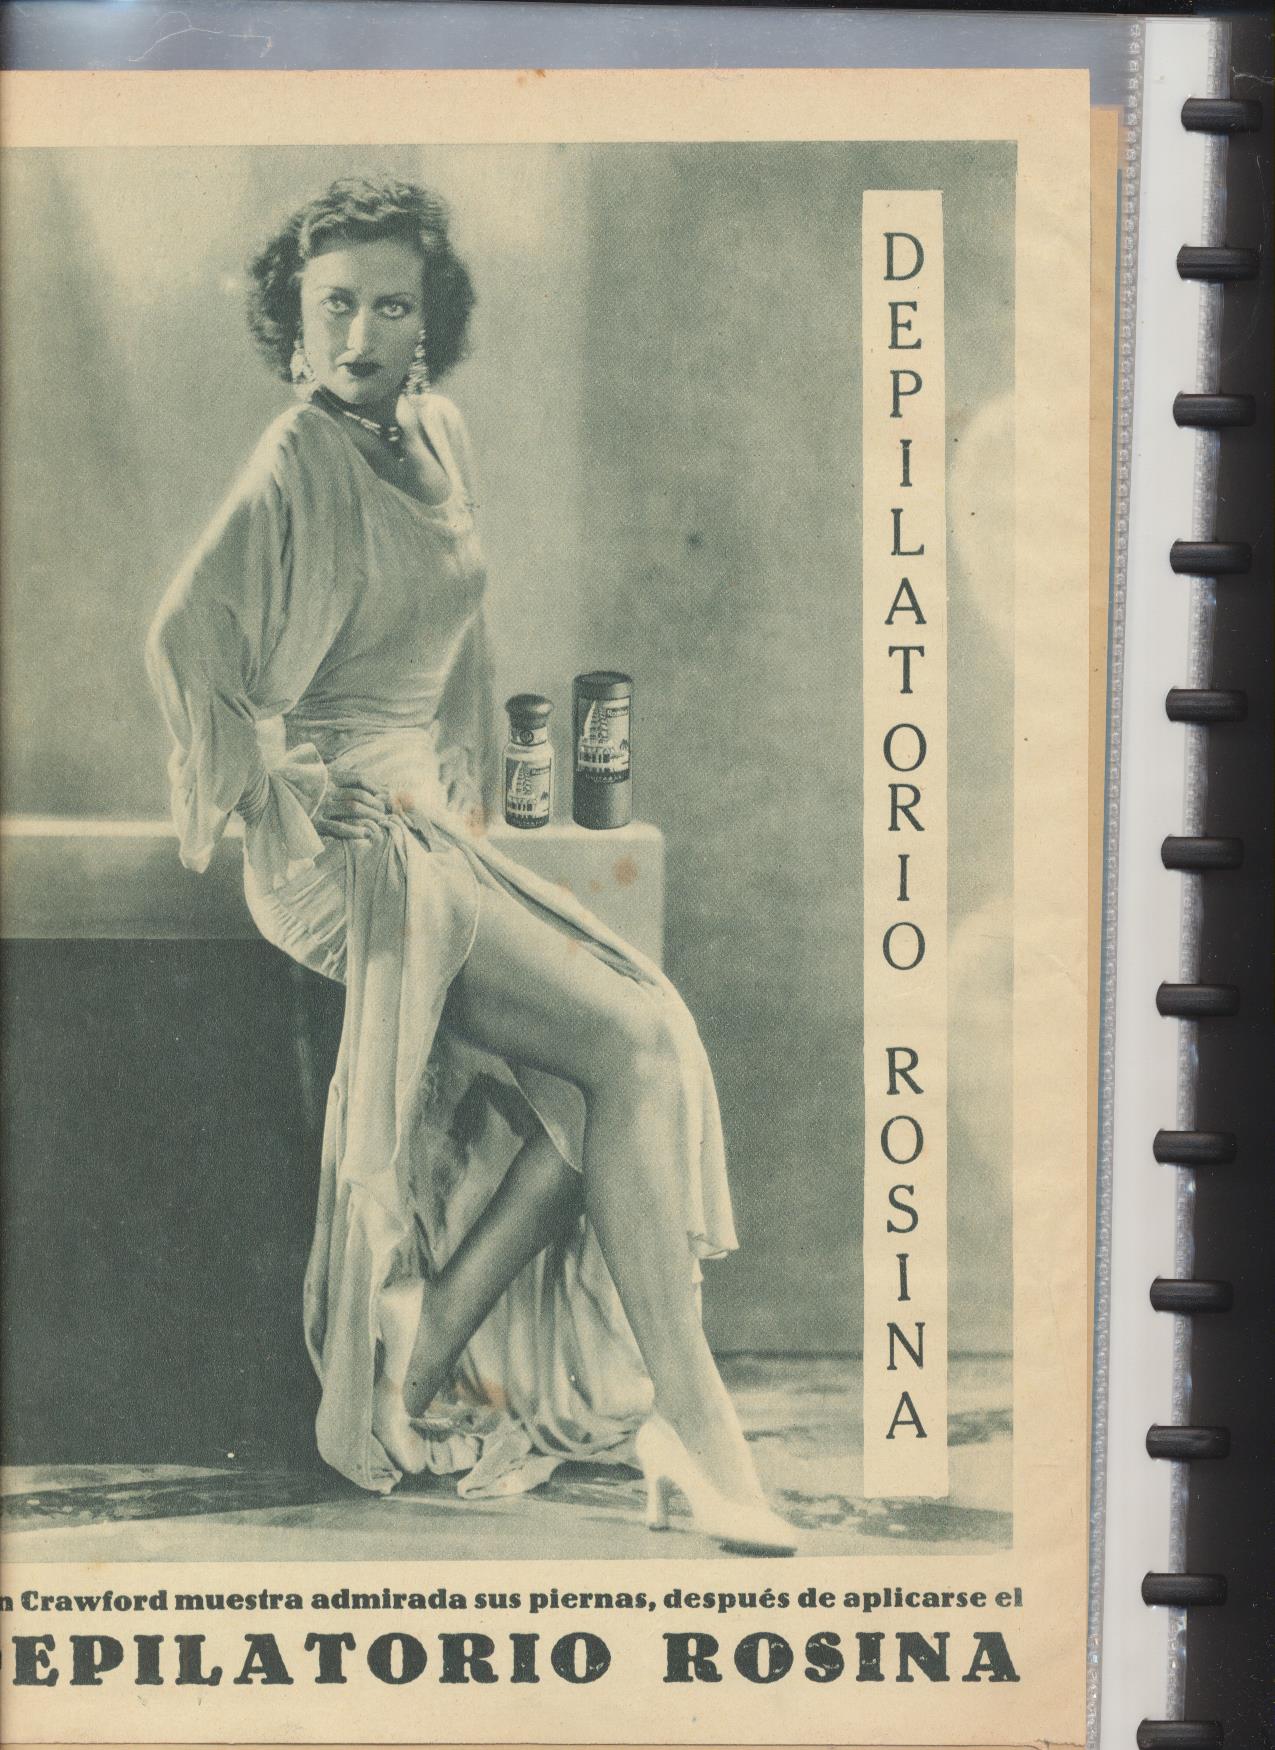 Films Selectos. Álbum con 40 láminas del nº 1 al 40. (28,5x21,5) Año 1930-1931